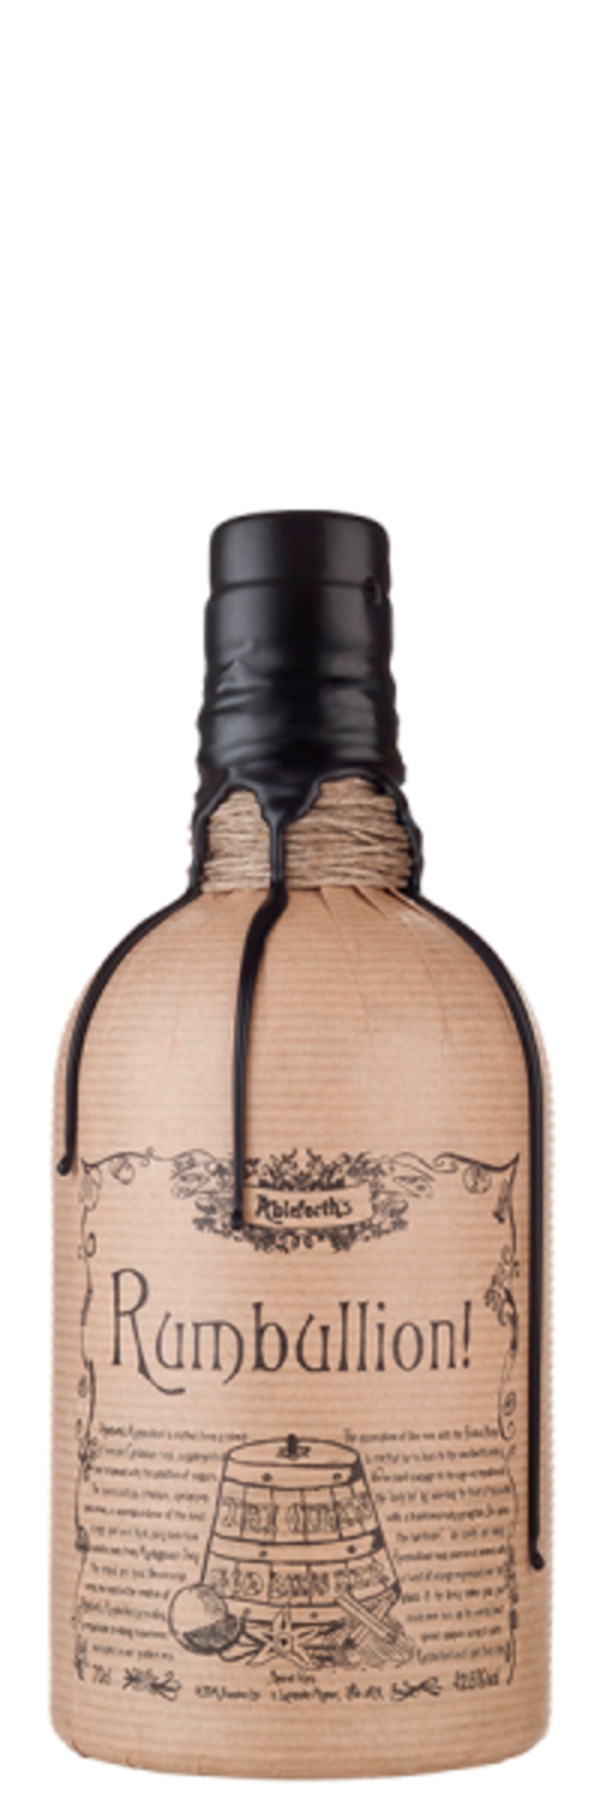 Bild 1 von Rumbullion Spiced Rum - Ableforth Distillers - Spirituosen